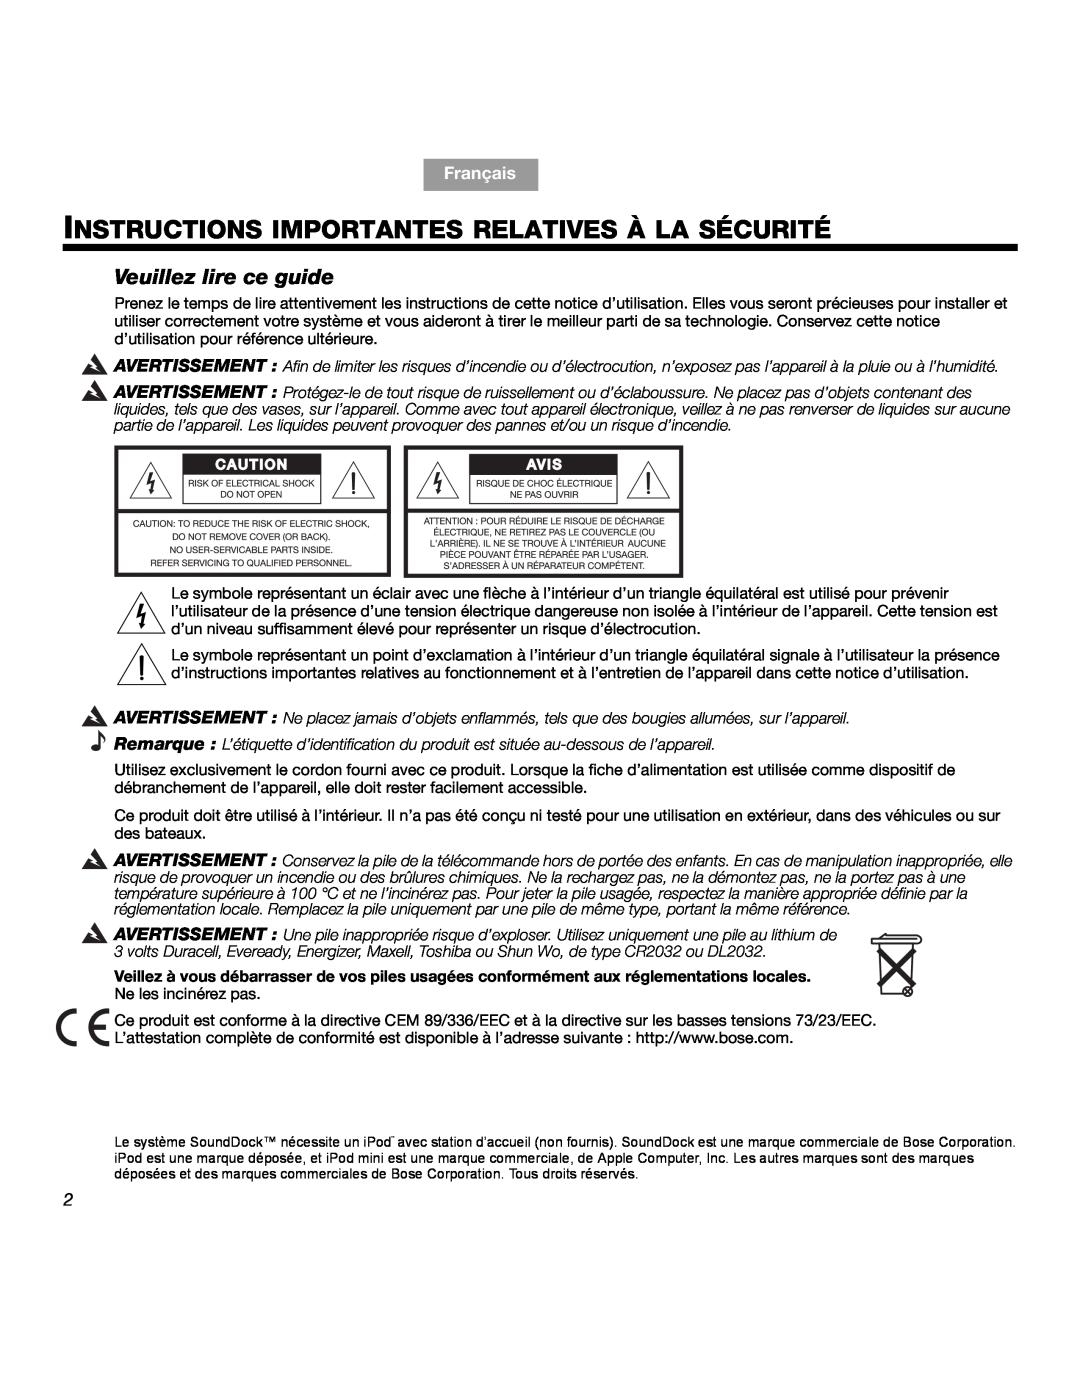 Bose SOUNDDOCKTM manual Instructions Importantes Relatives À La Sécurité, Veuillez lire ce guide, Français 